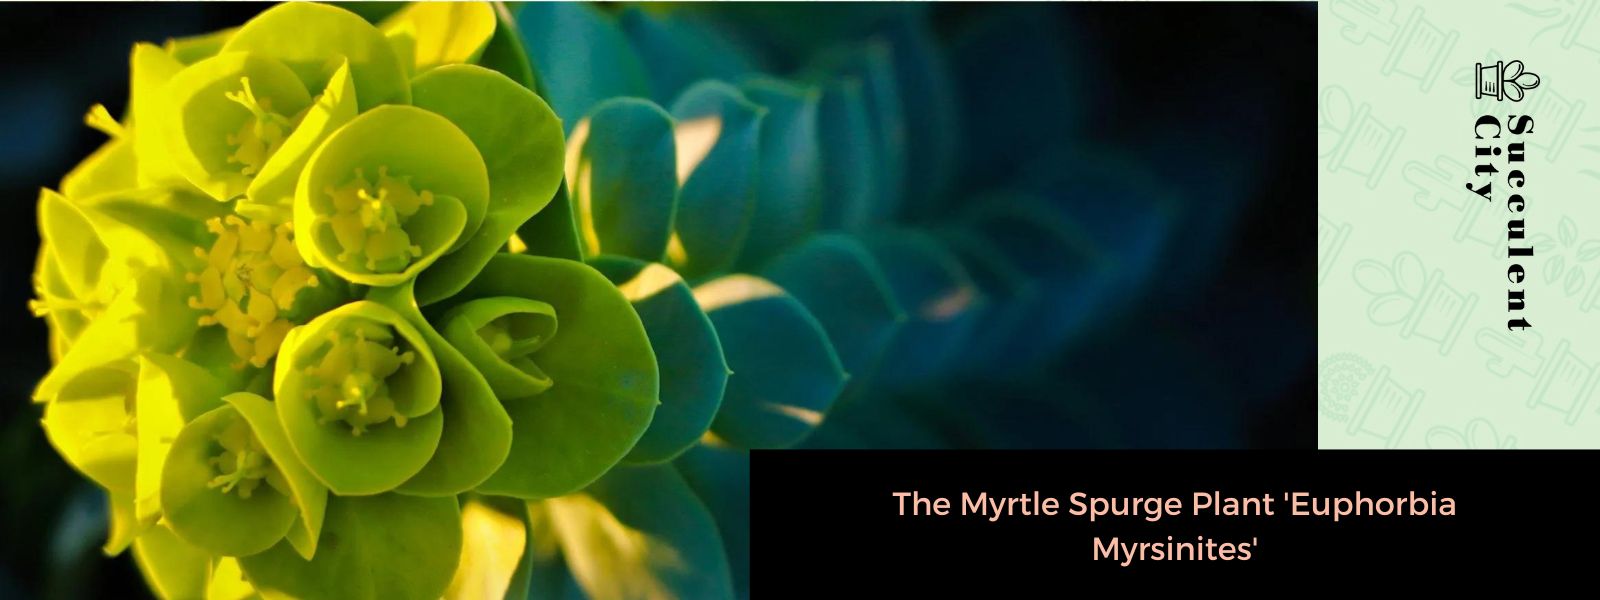 La planta de mirto “Euphorbia Myrsinites”